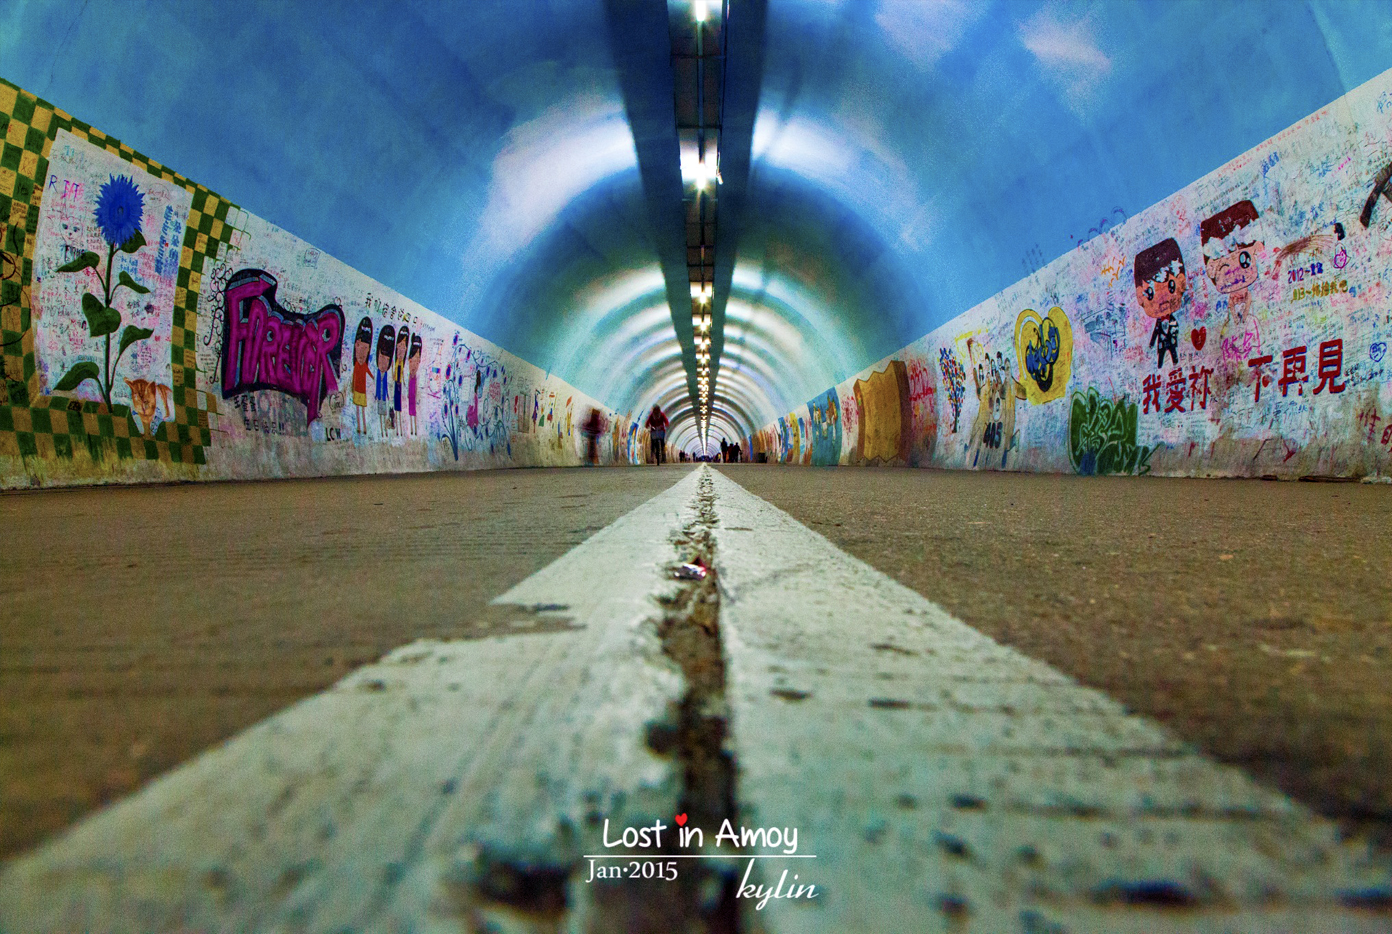 芙蓉隧道 拍照亮点:个性涂鸦 芙蓉隧道位于厦门大学内,自西向东连通